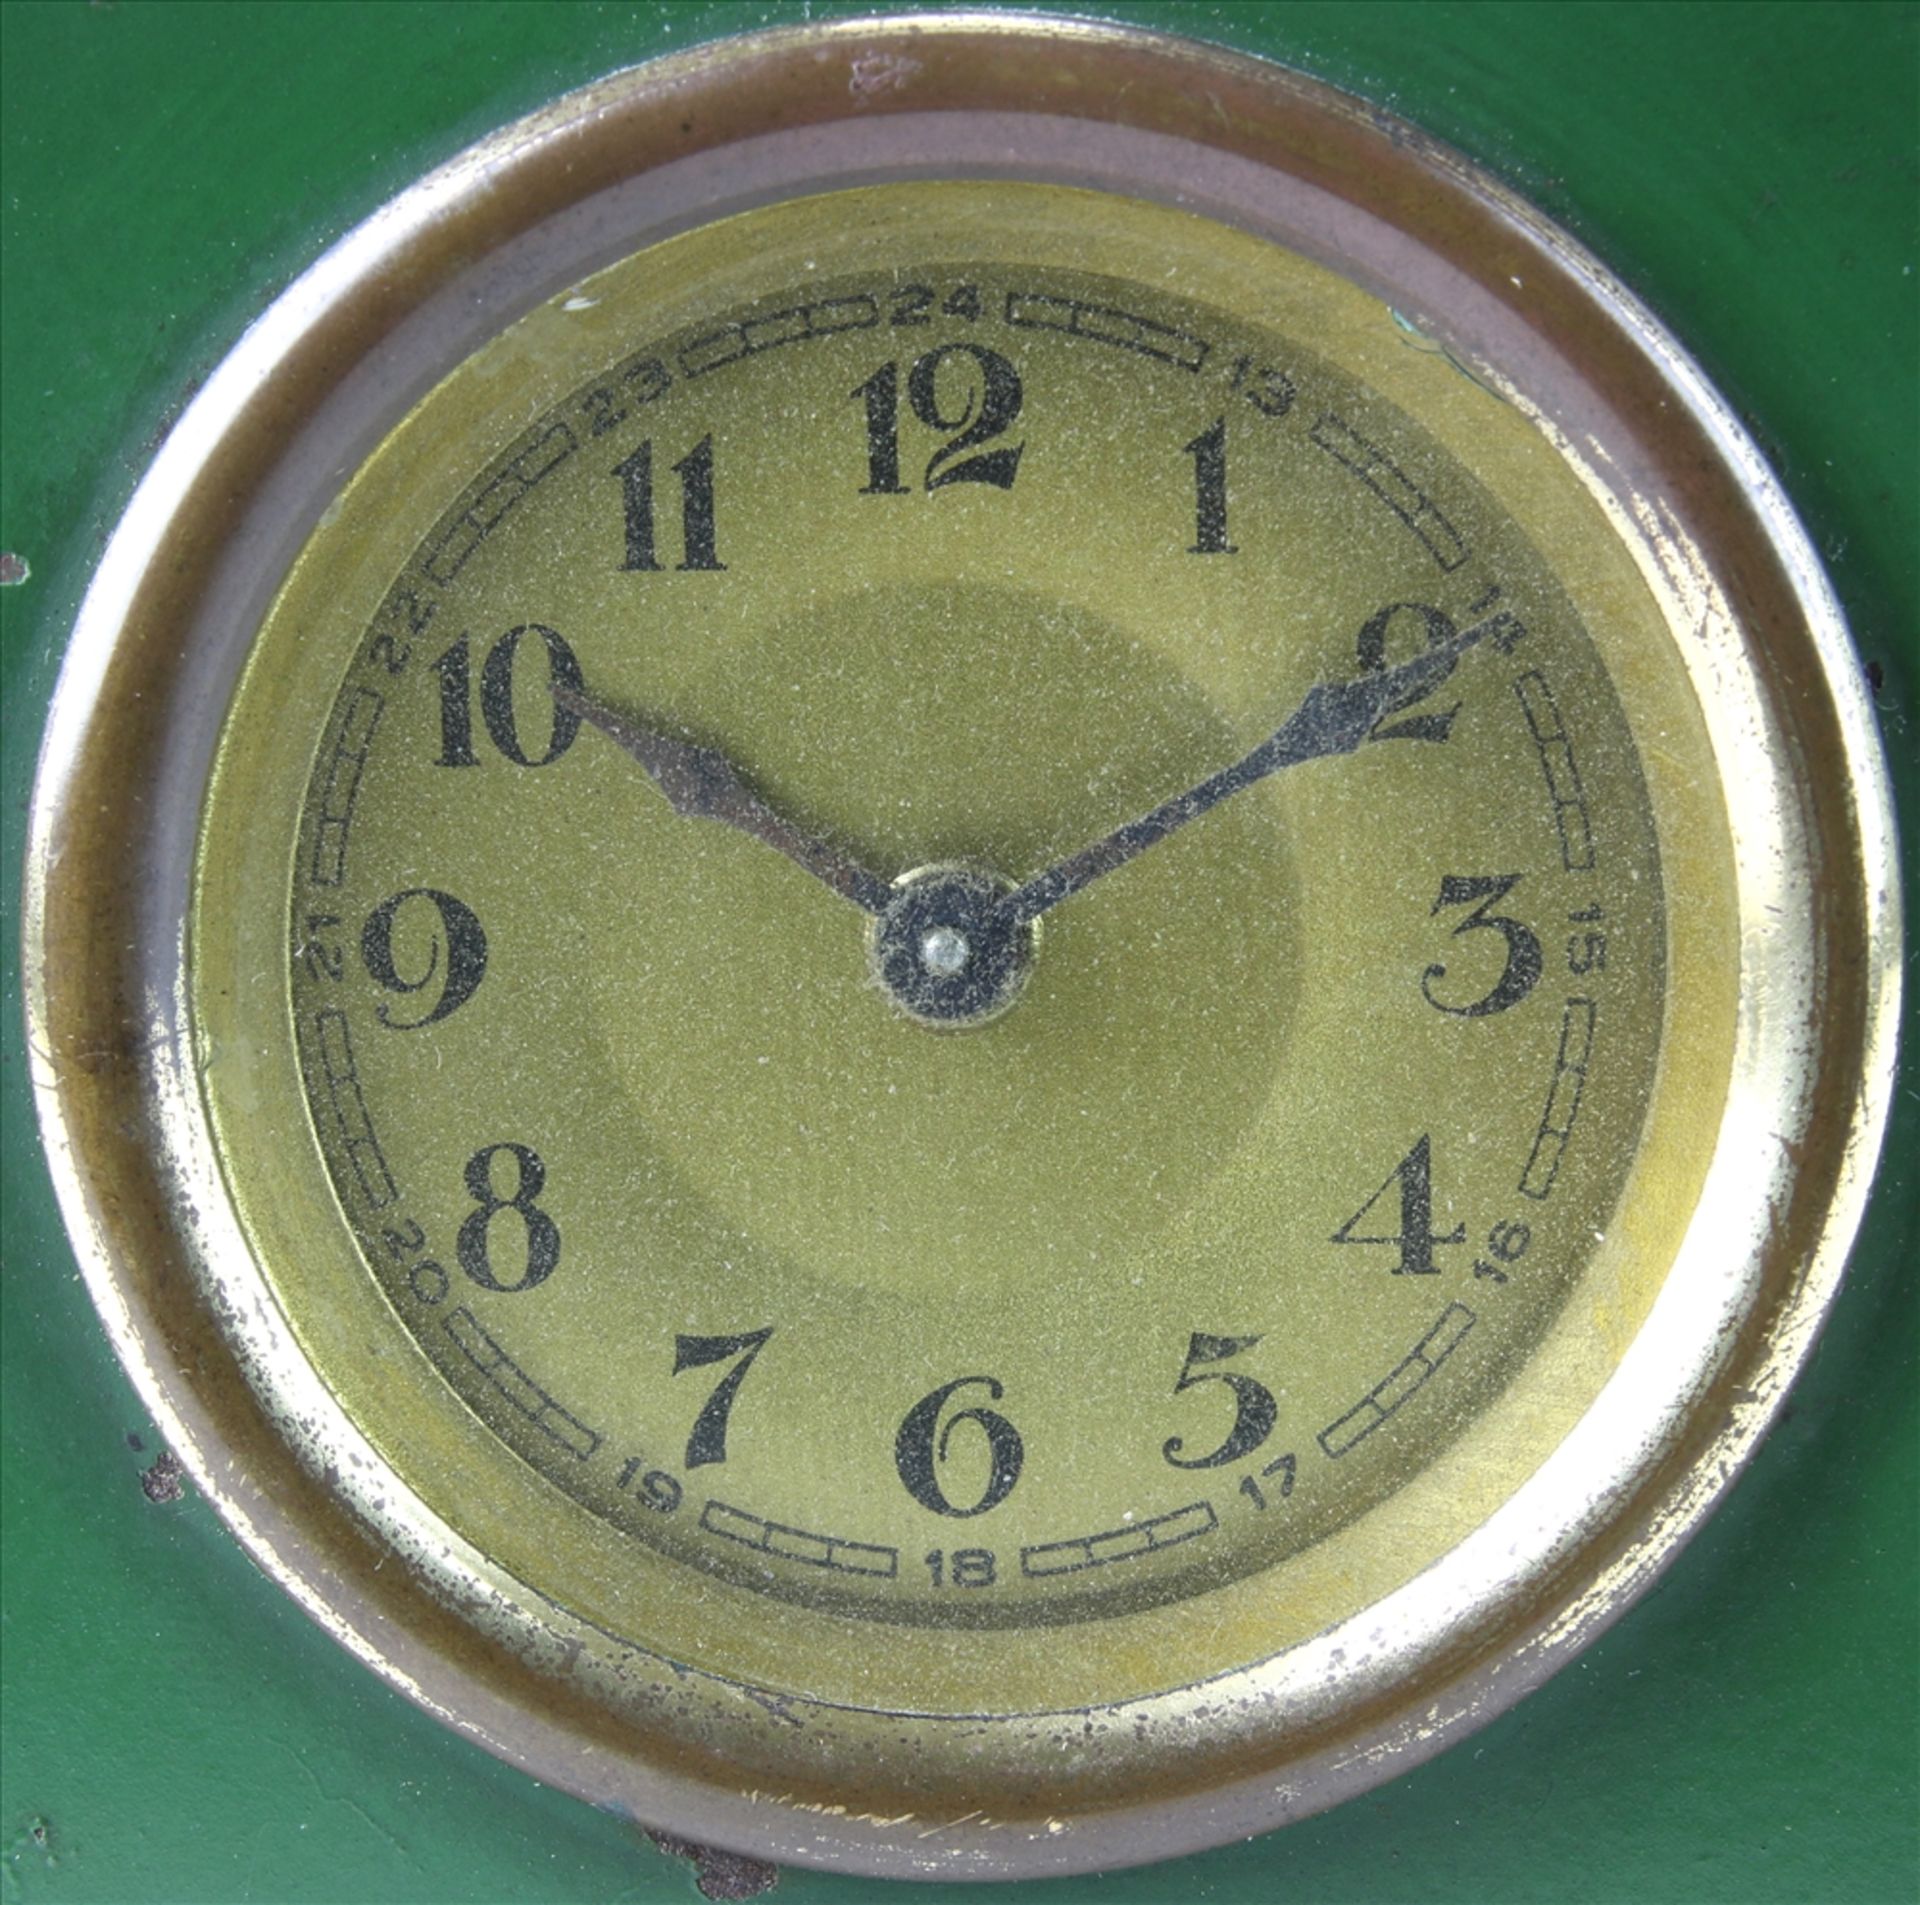 Sparbüchsenuhr JGEHA, Slowakei um 1920. Metallgehäuse mit Uhr und Geldfach. Hinten Plakette der - Image 2 of 6